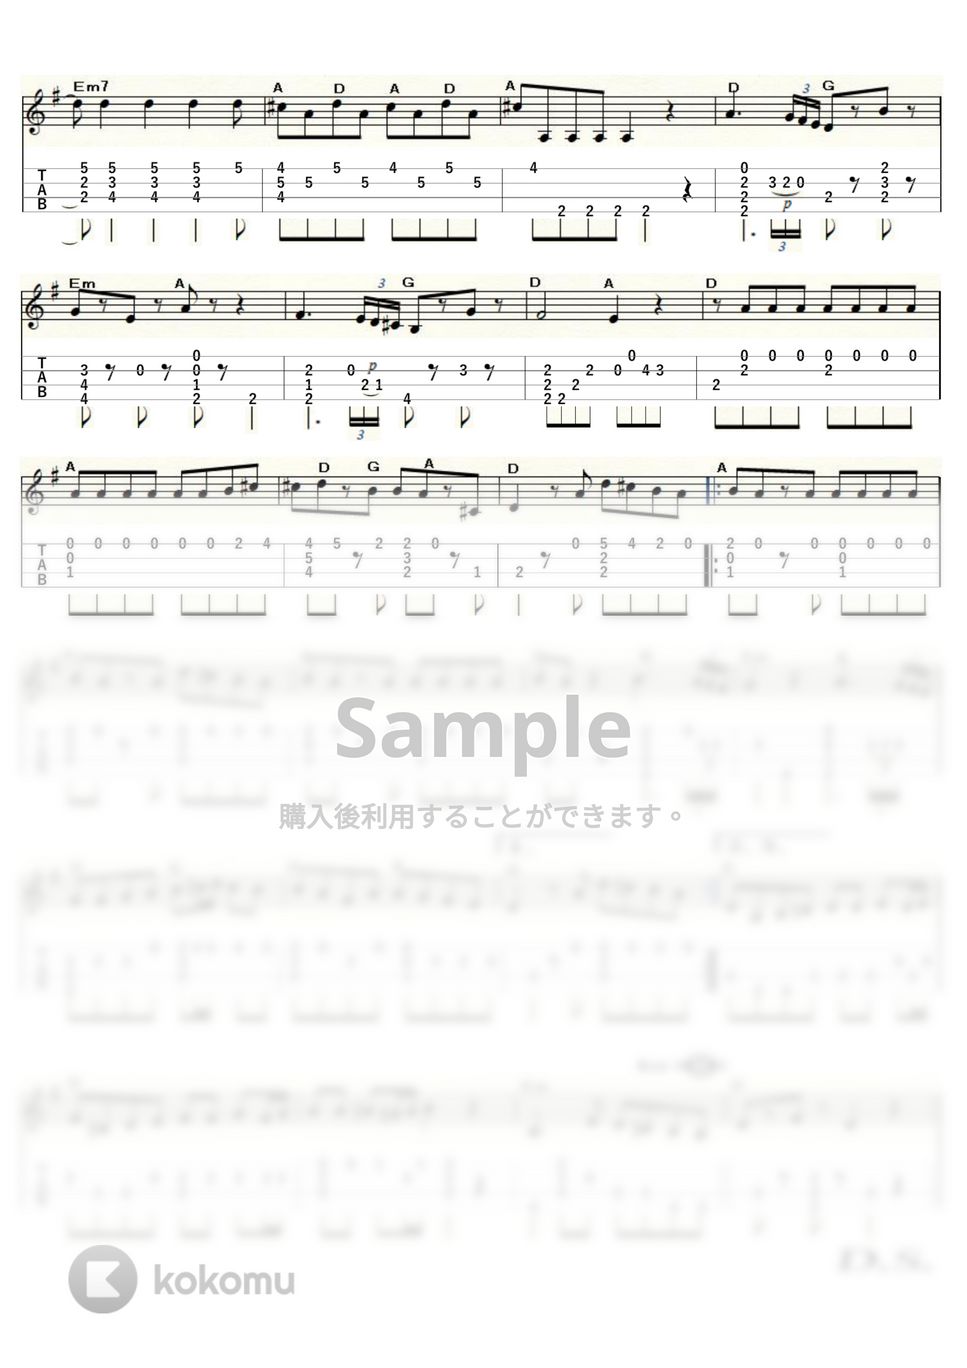 モーツァルト - アイネ・クライネ・ナハトムジーク第1楽章 (ｳｸﾚﾚｿﾛ / Low-G / 中級～上級) by ukulelepapa